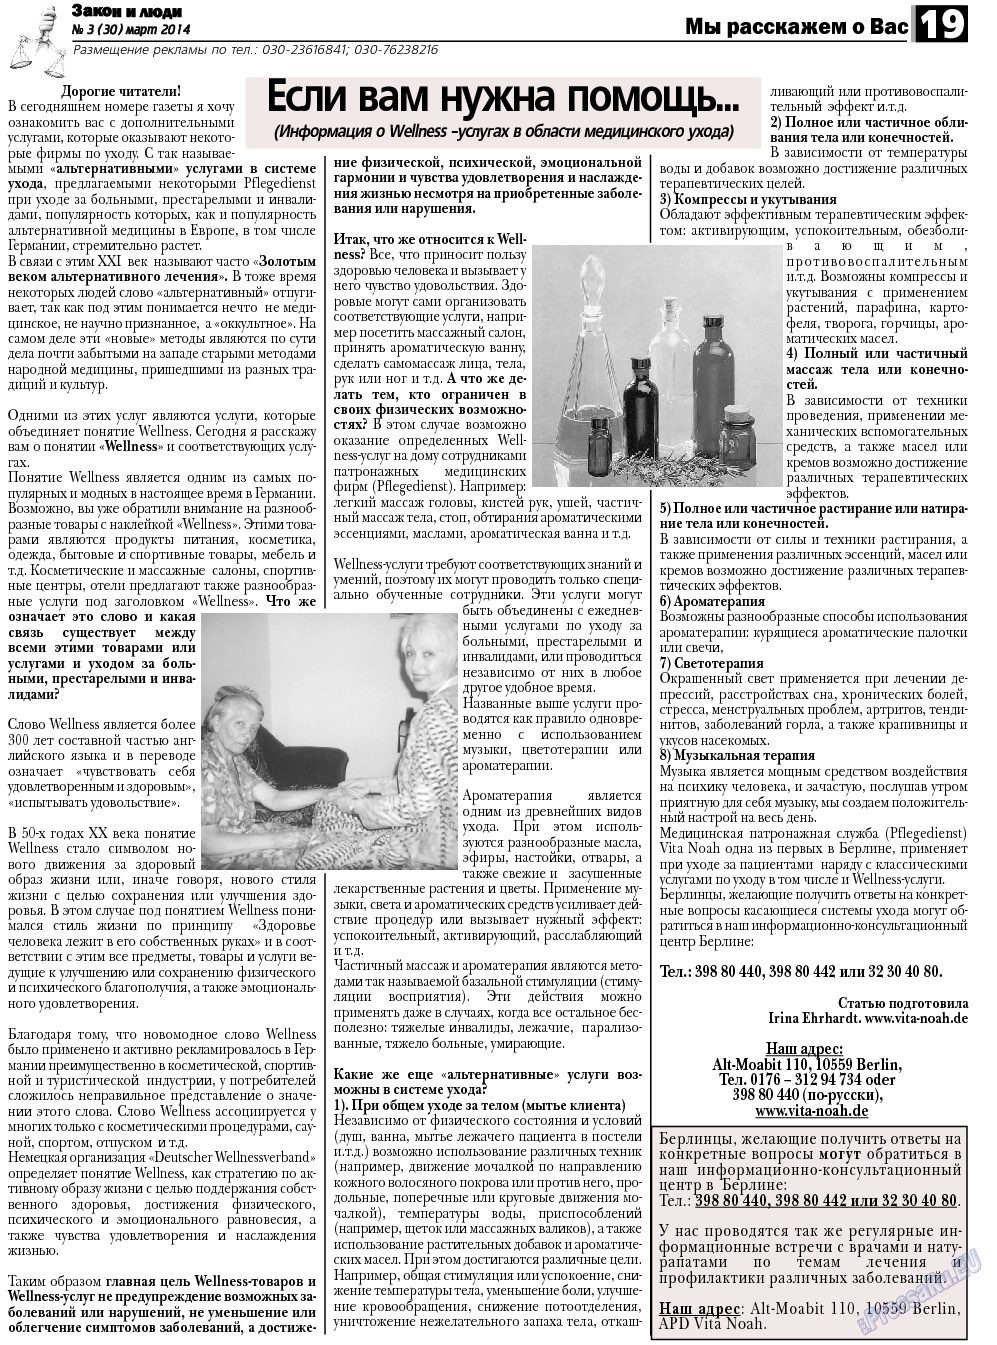 Закон и люди, газета. 2014 №3 стр.19